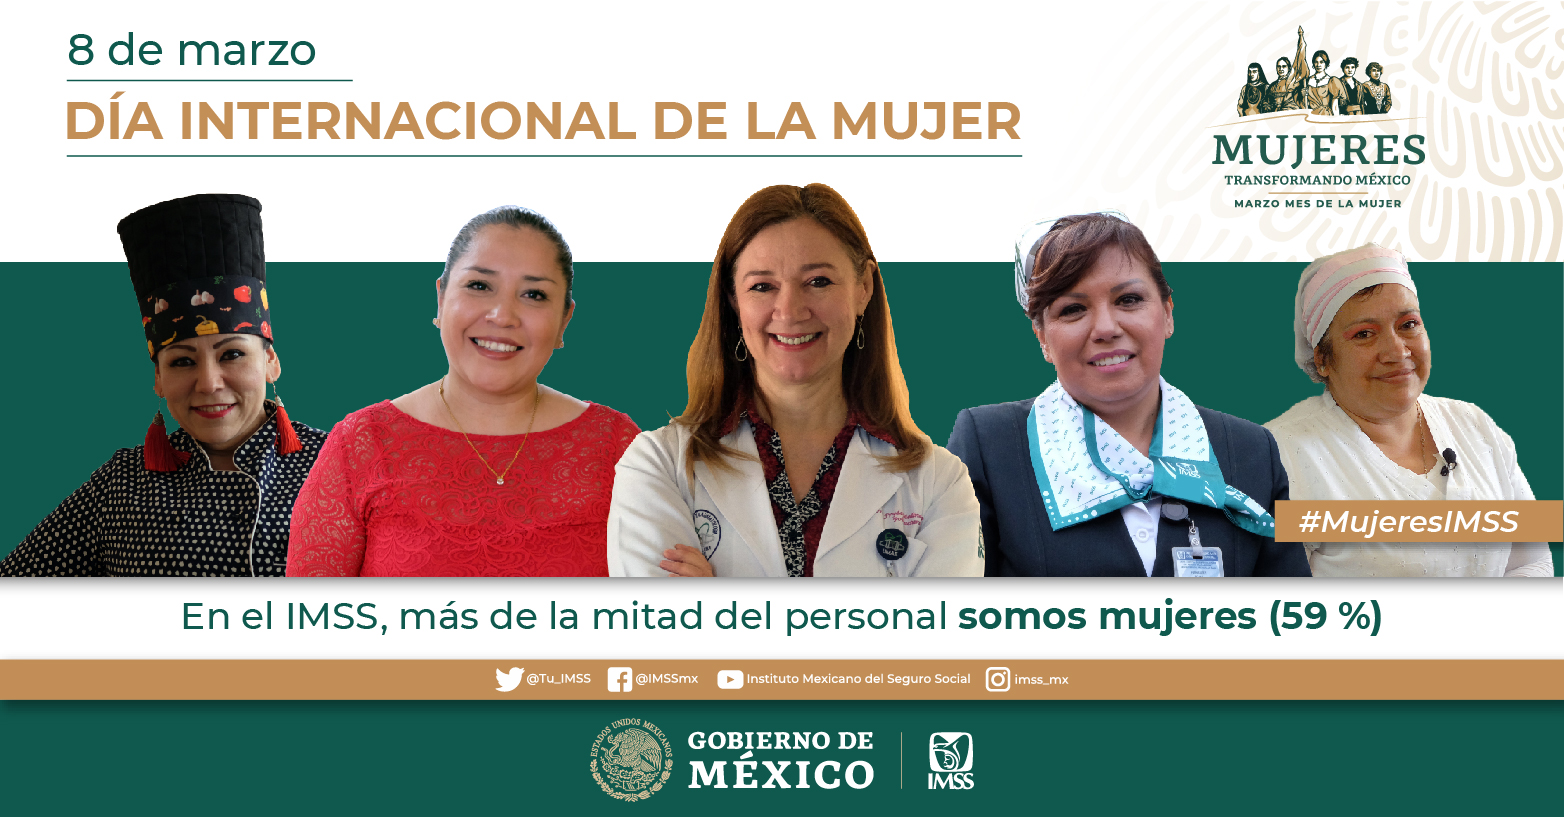 Desde todas los sectores y desde todos los rincones del país, las mujeres están transformando México